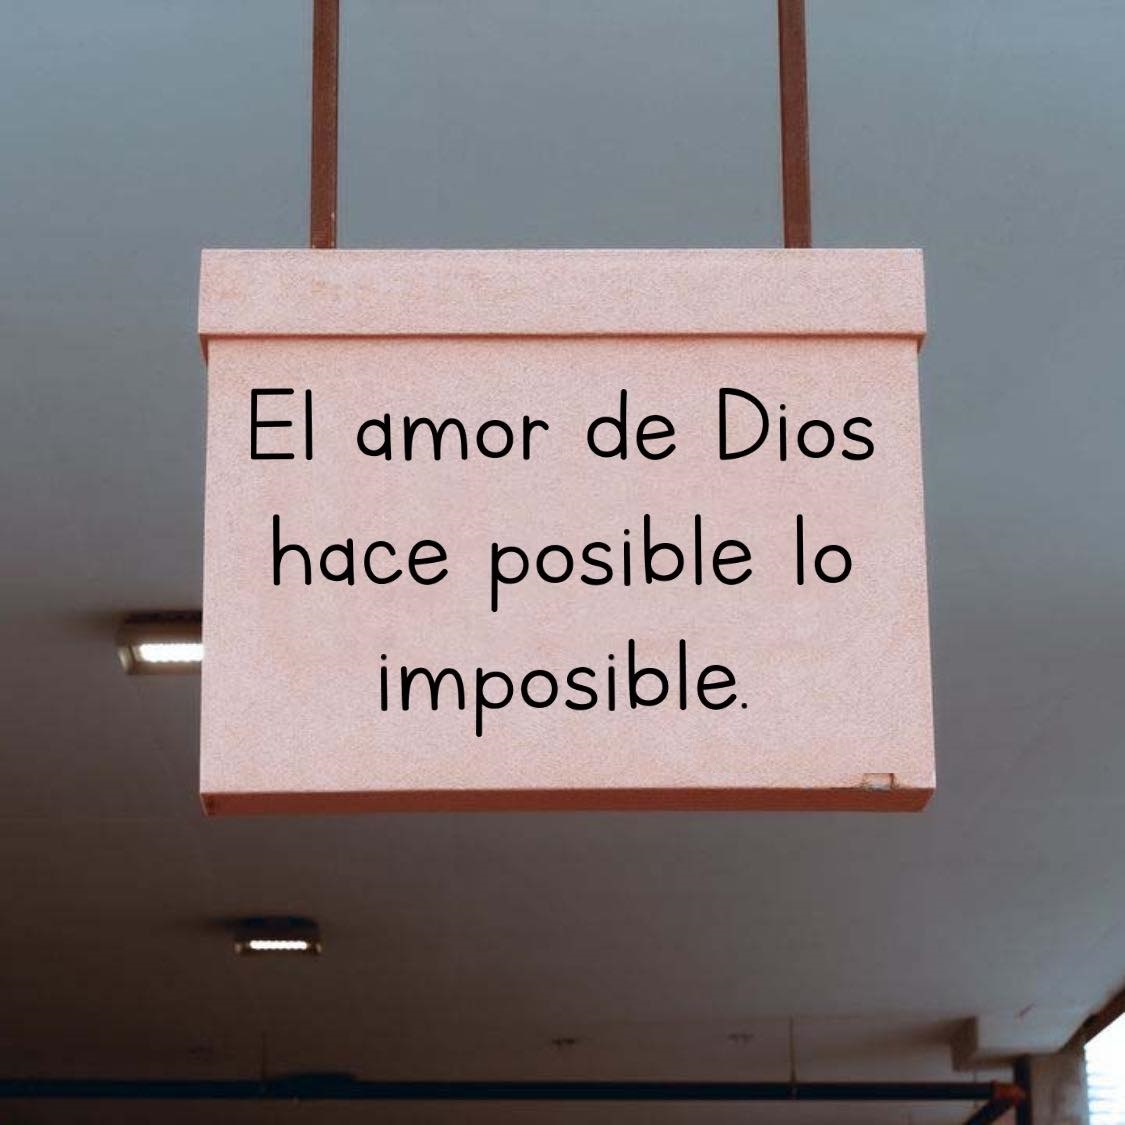 El amor de Dios hace posible lo imposible